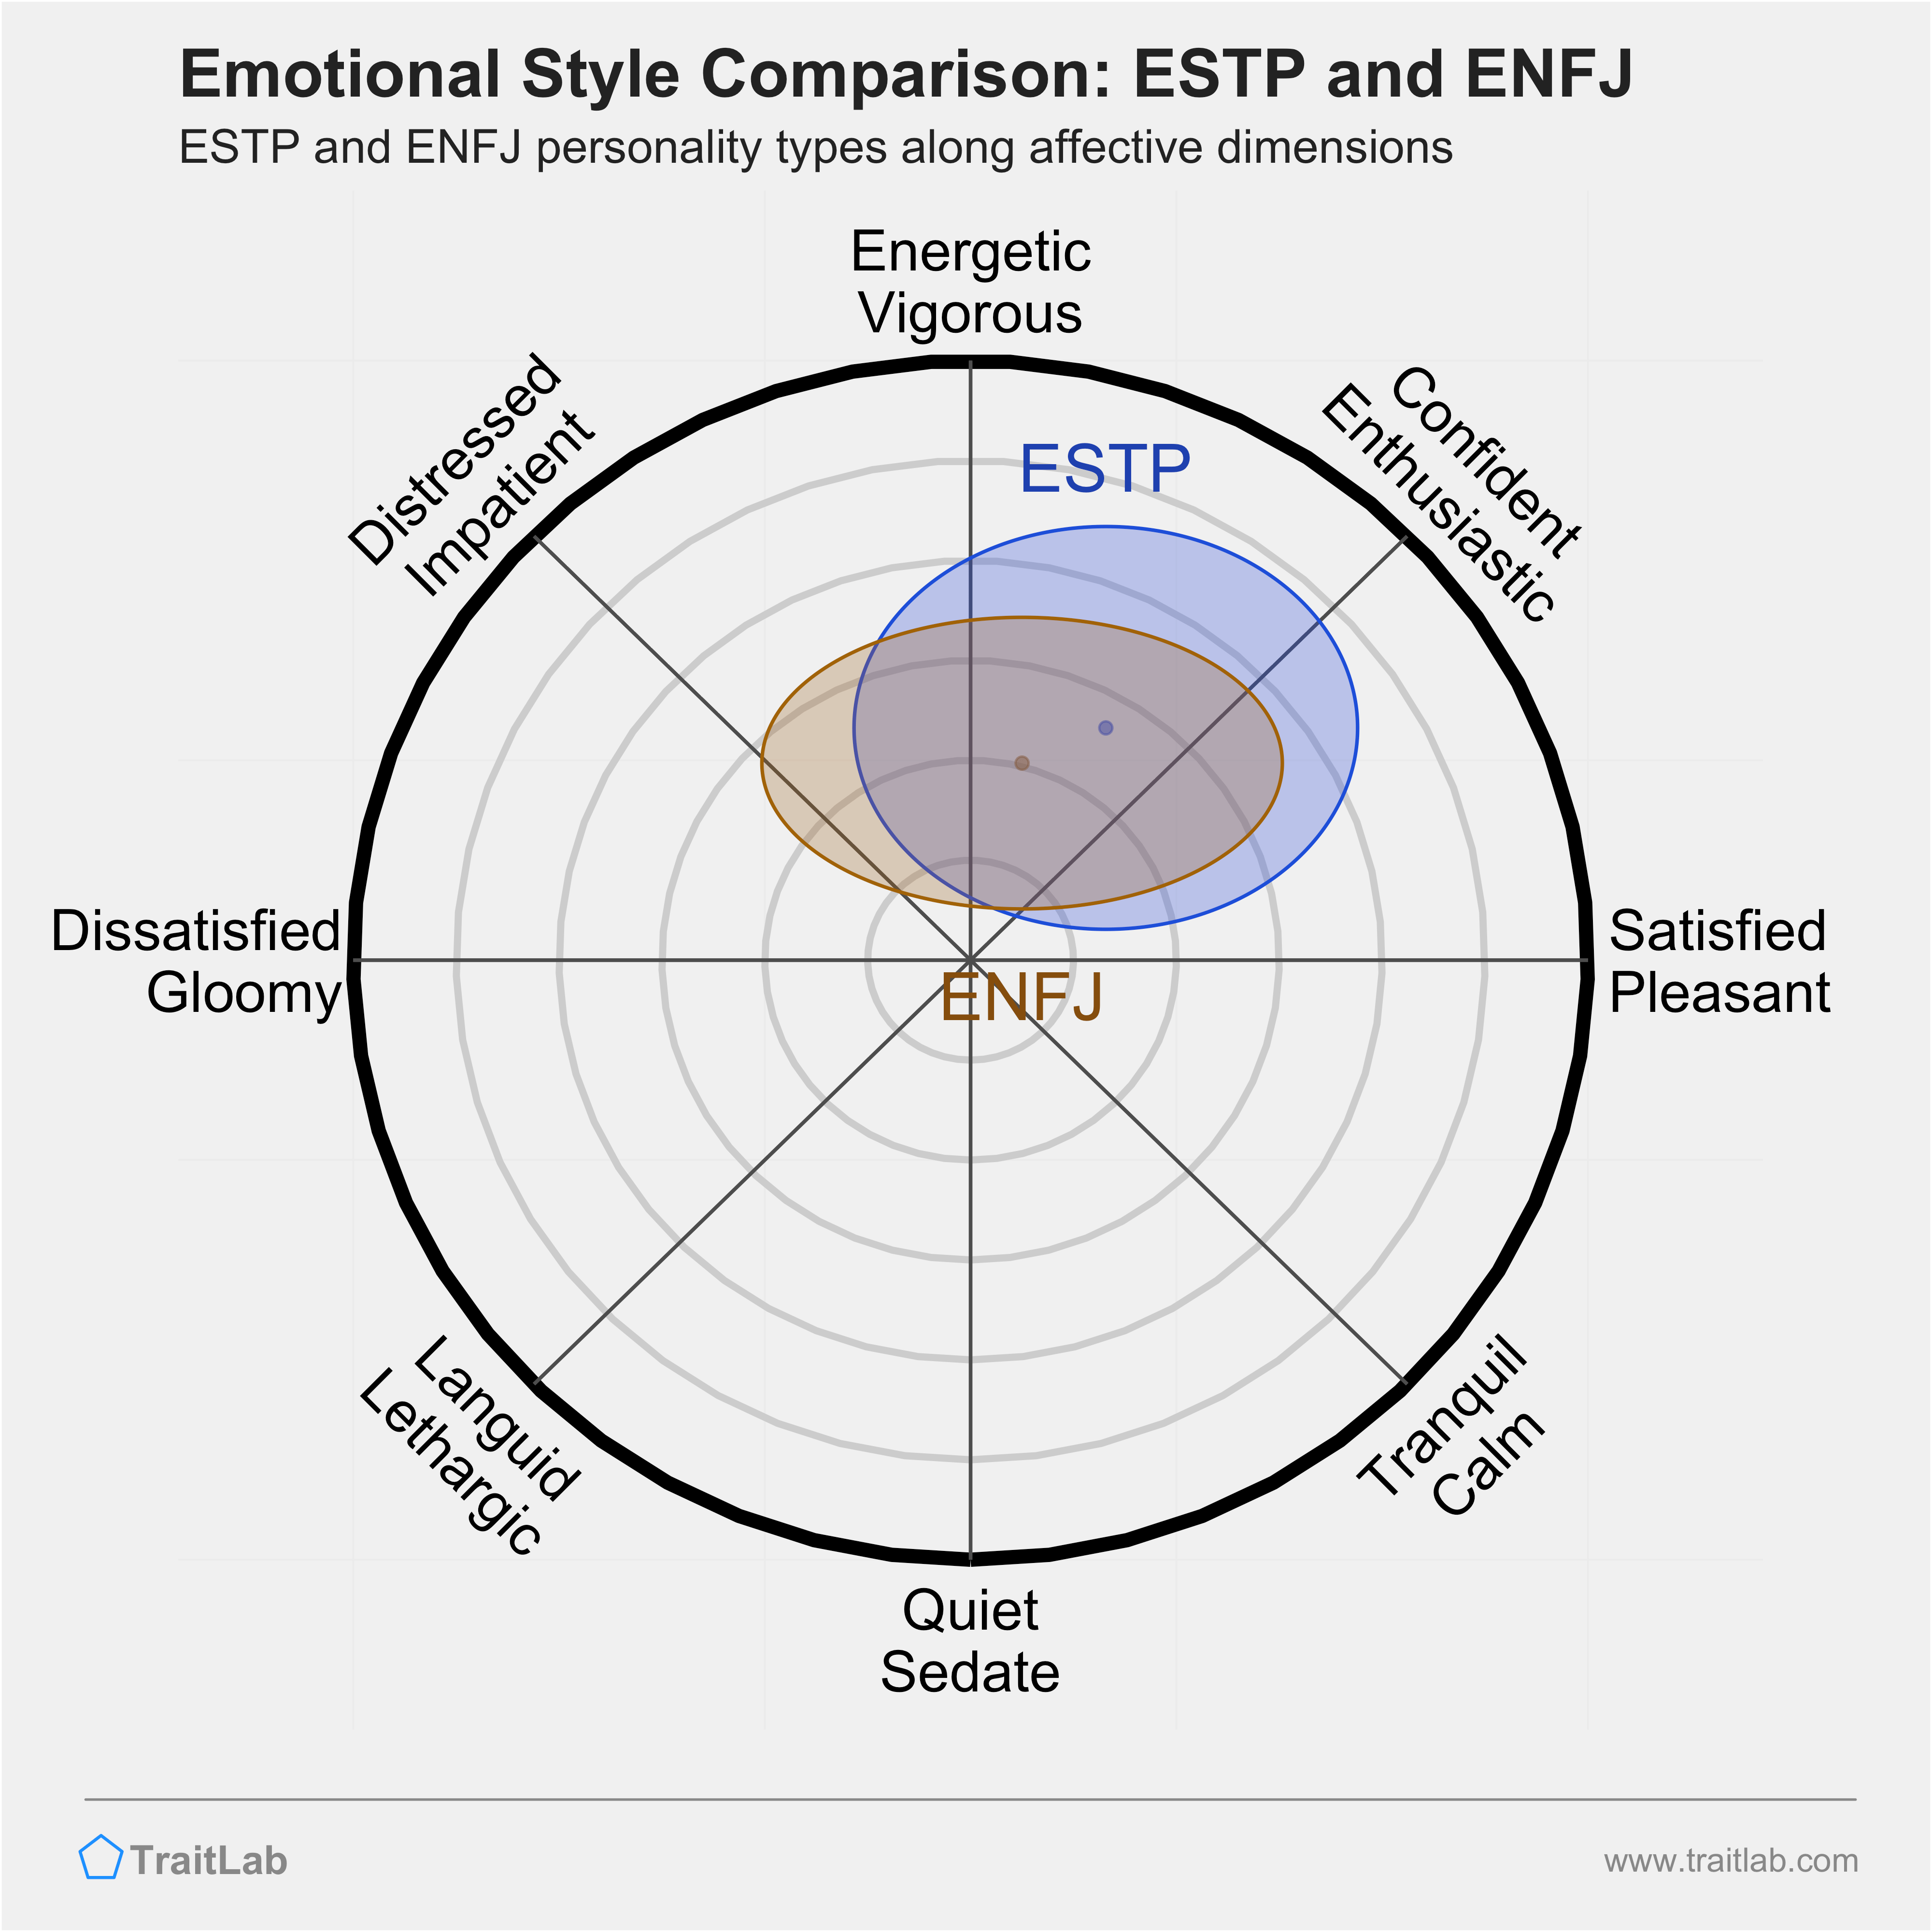 ESTP and ENFJ comparison across emotional (affective) dimensions